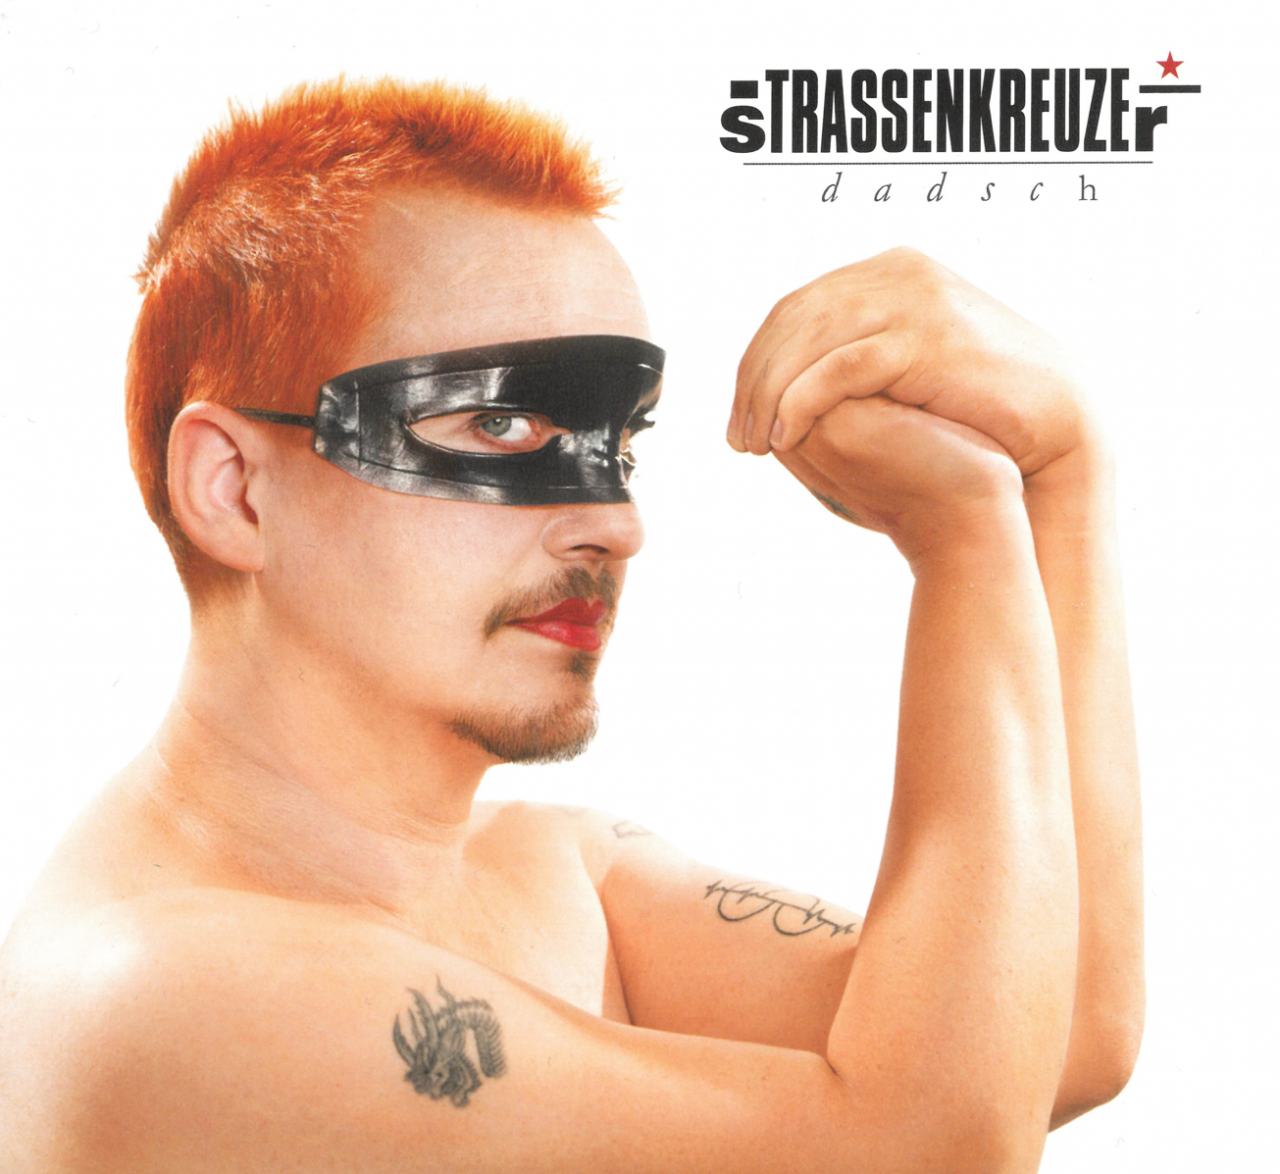 Auf dem Cover des Albums sieht man einen Mann, oberkörperfrei mit roten, kurzen Haaren. Er trägt eine dünne Maske um die Augen. Seine Arme sind nach oben gebeugt, Hände vor seinem Gesicht verschlossen.